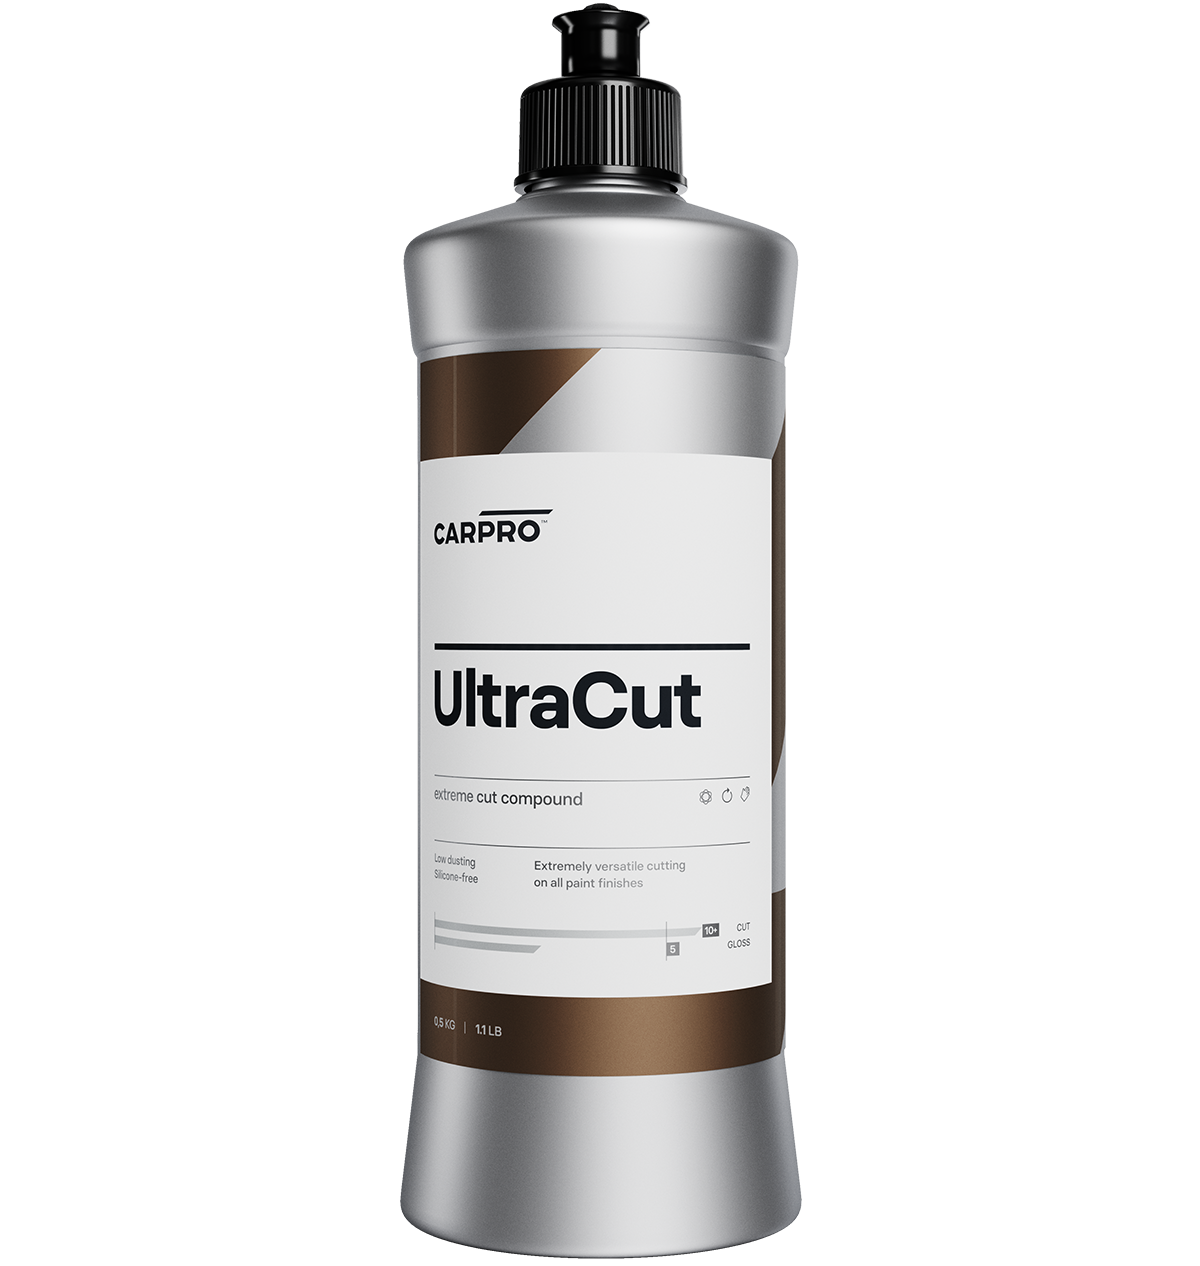 UltraCut